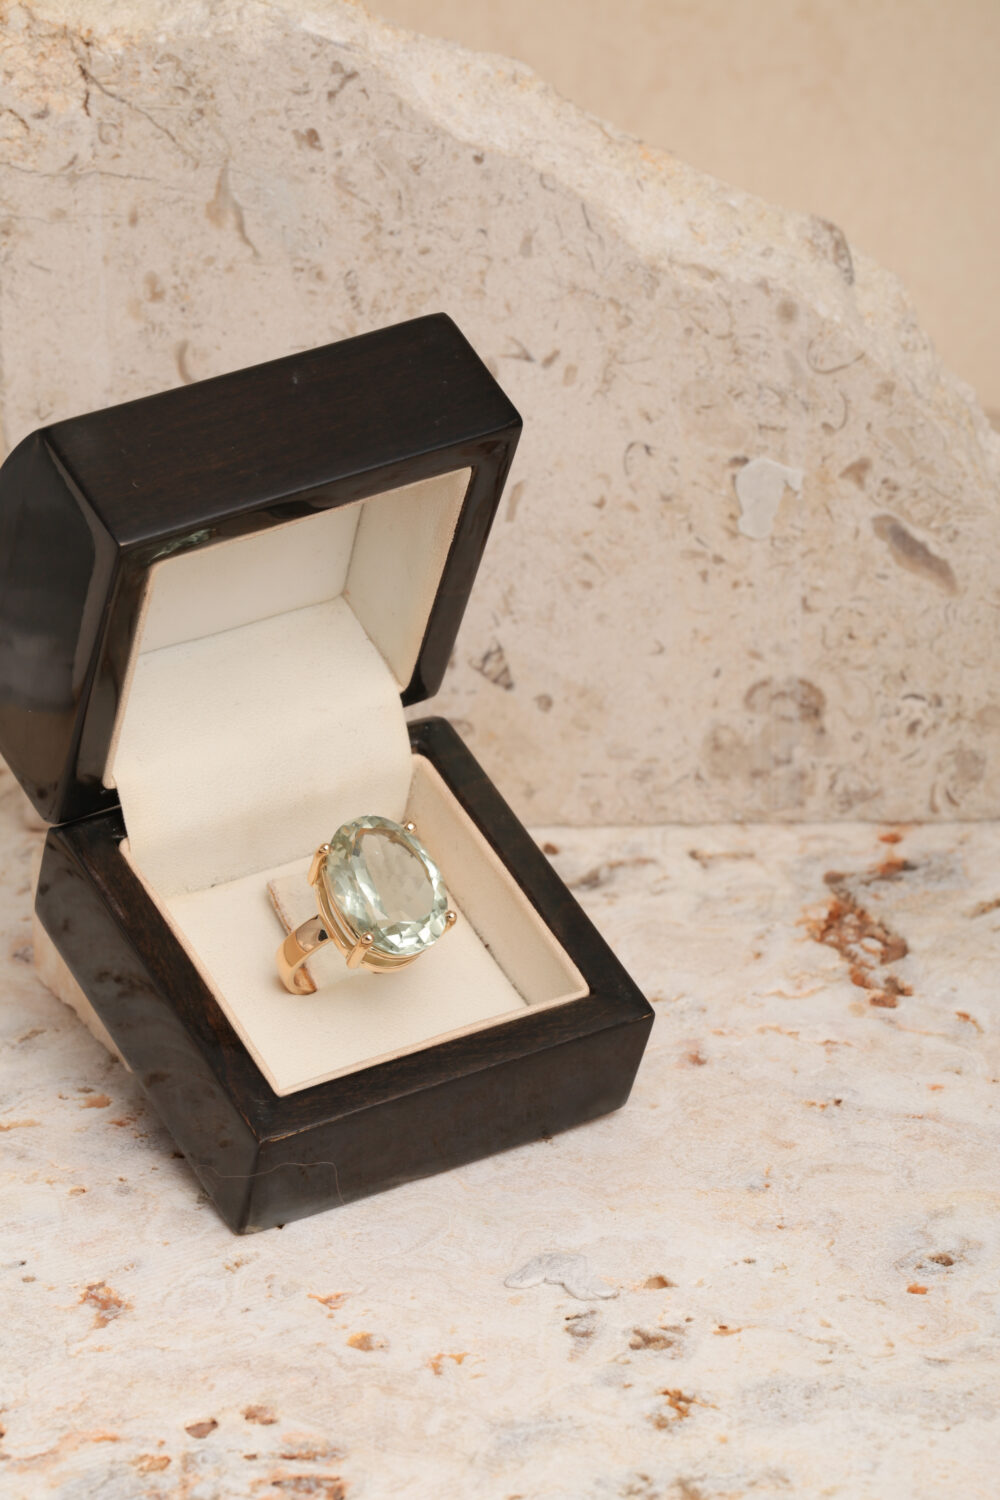 18-karaats geelgouden ring met een prasioliet edelsteen. Al onze sieraden worden met de hand gemaakt door juweelontwerpster Pascale Masselis in ons atelier in Antwerpen.